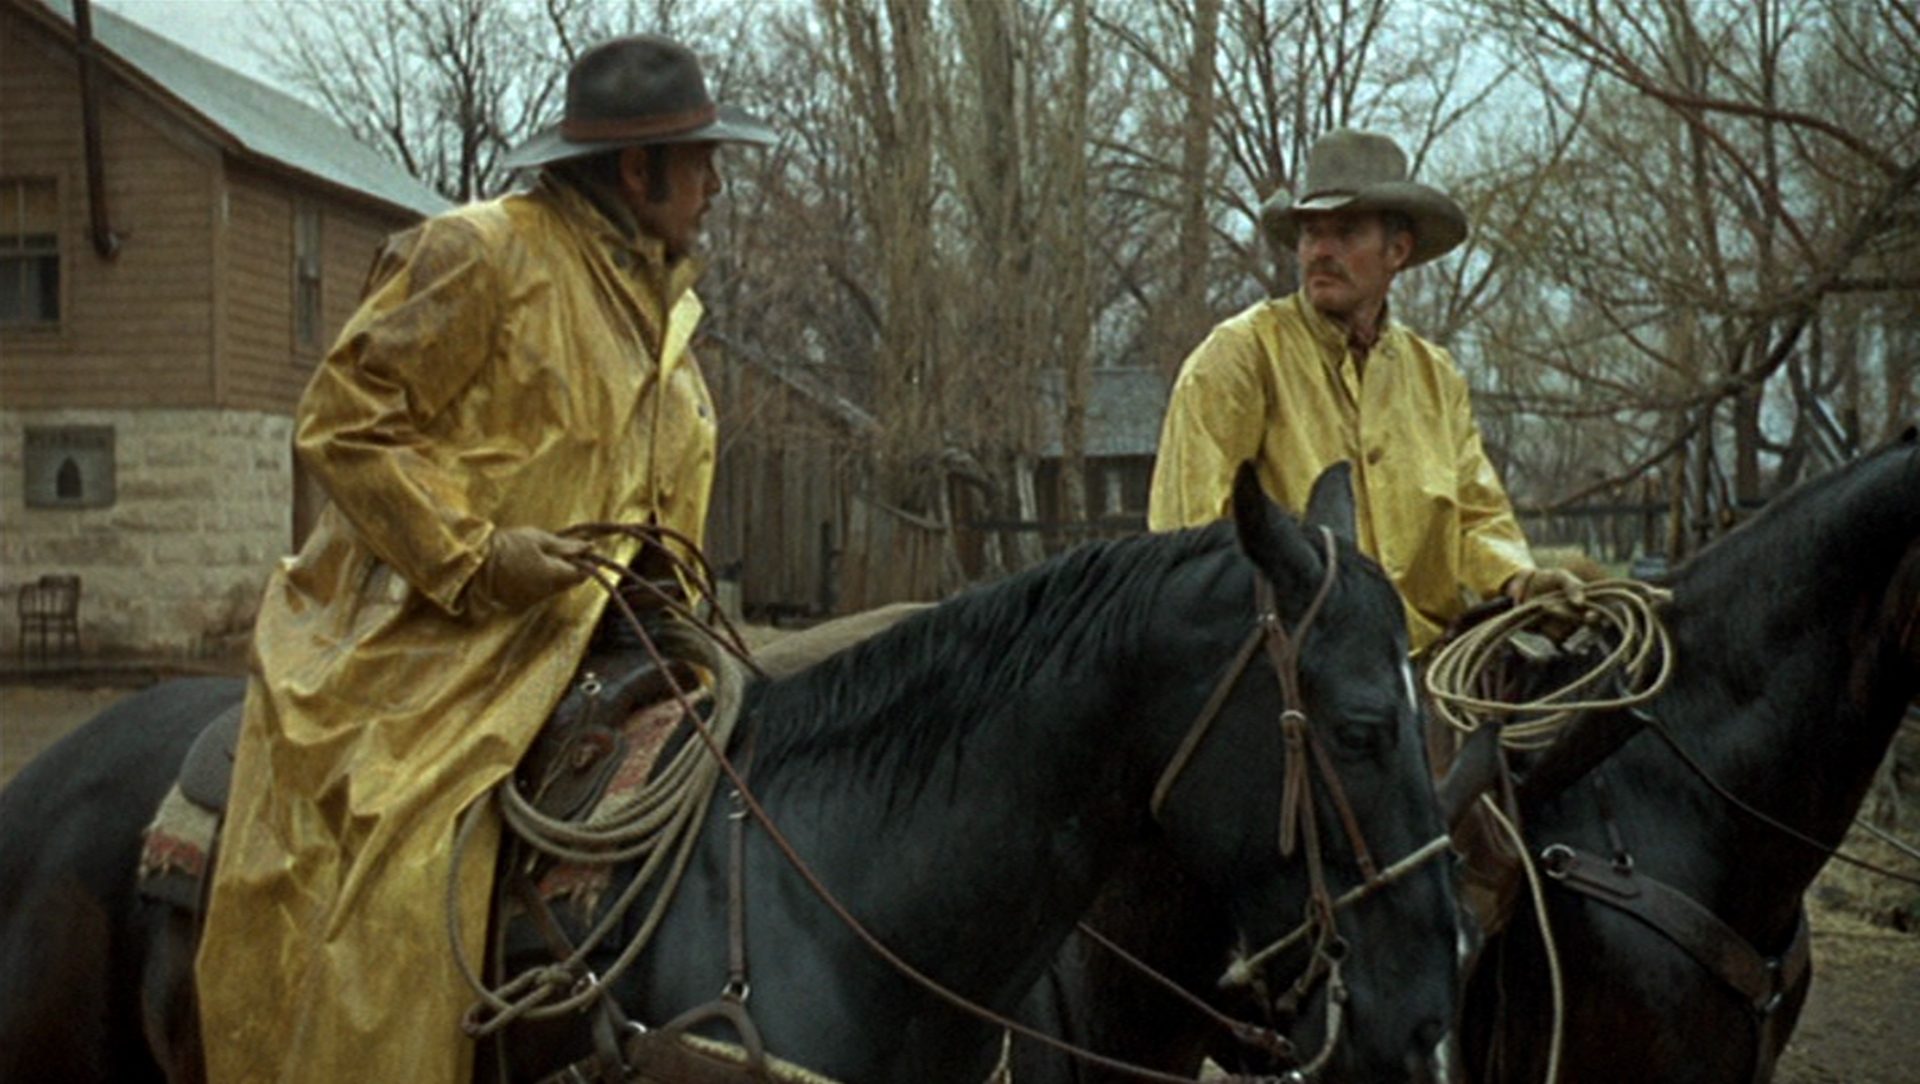 Will Penny im Gespräch mit einem Rancharbeiter zu Pferd in Regenjacken.